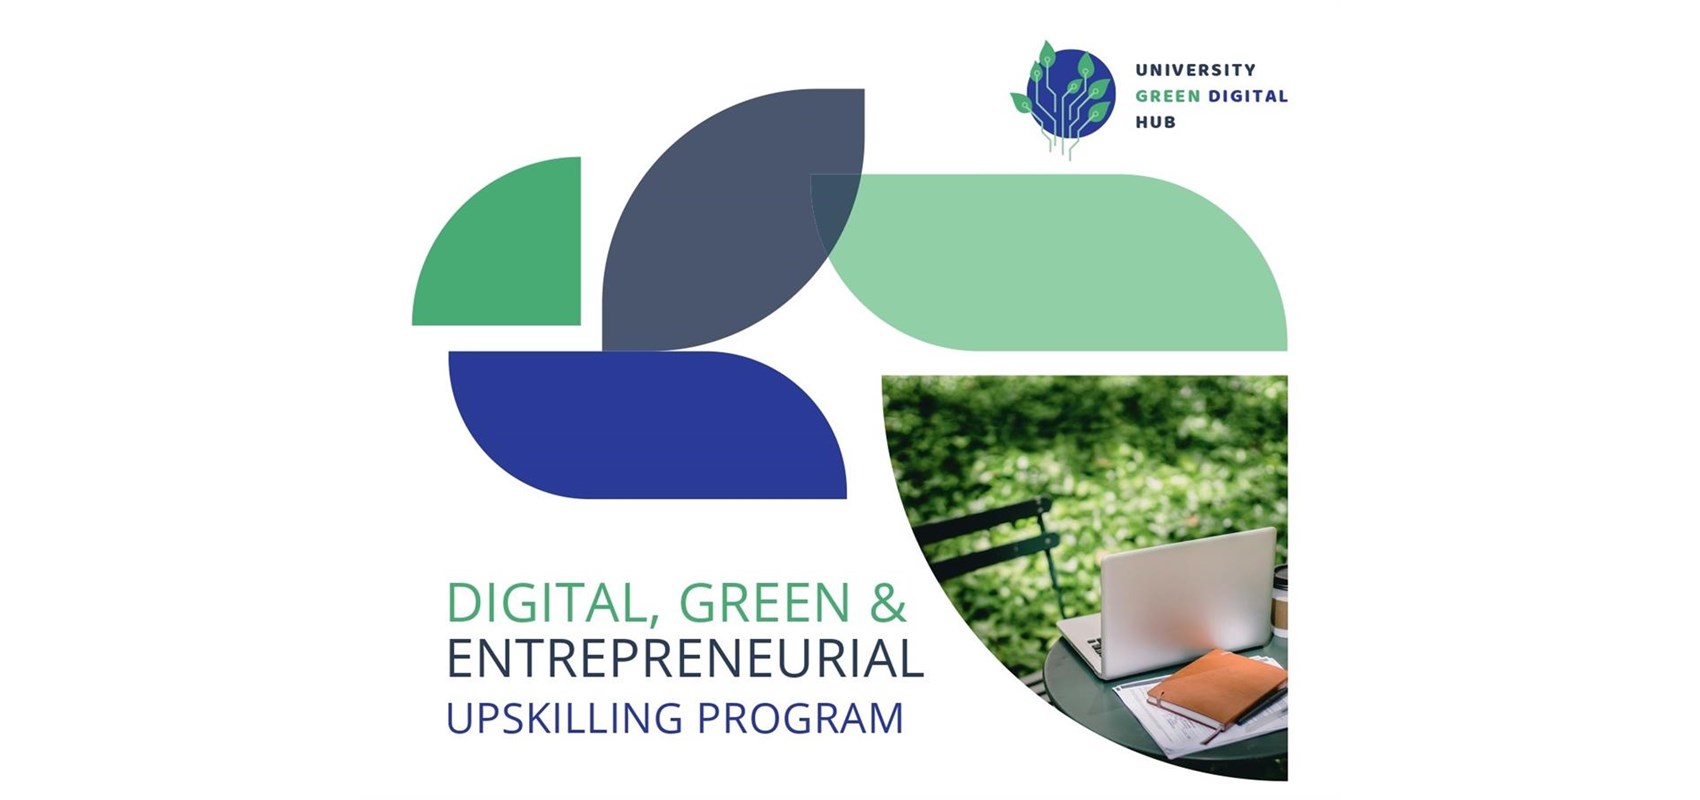 Prijavite se na izborni predmet „Program unaprjeđenja digitalnih, zelenih i poduzetničkih vještina“ u okviru projekta University Green Digital HUB!